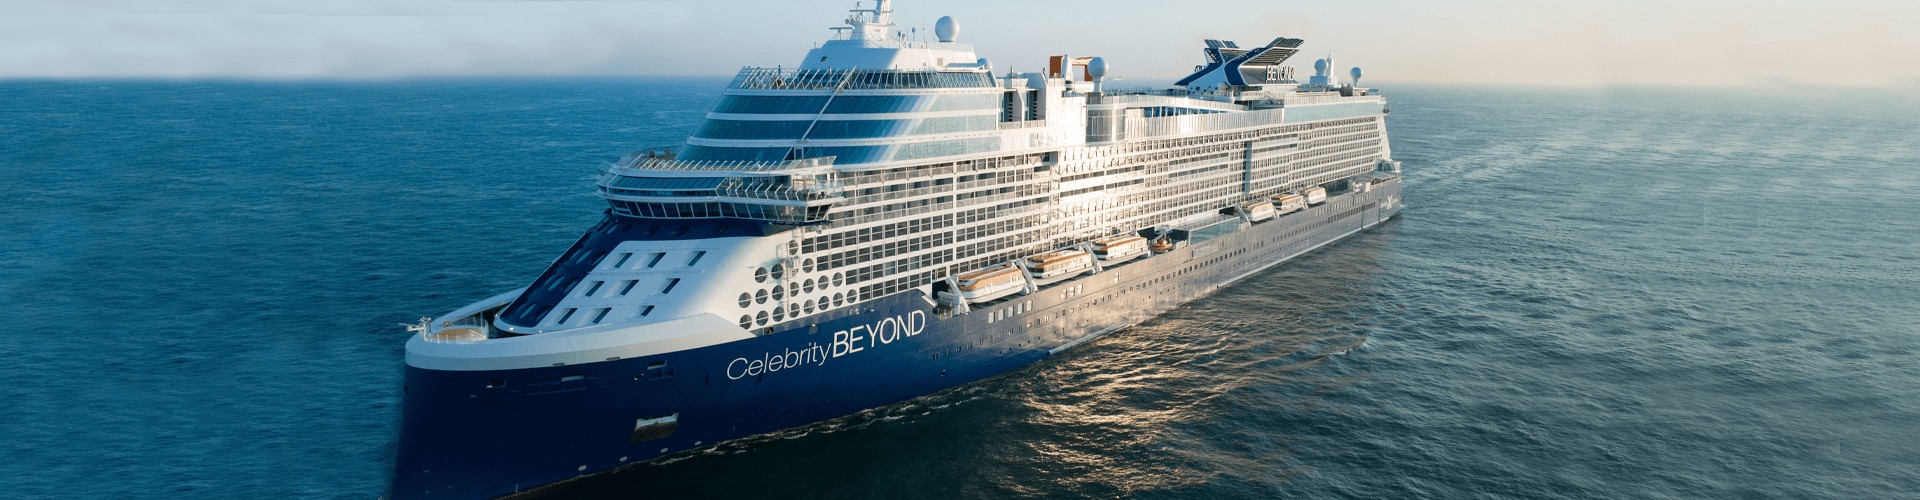 celebrity cruises uk booking